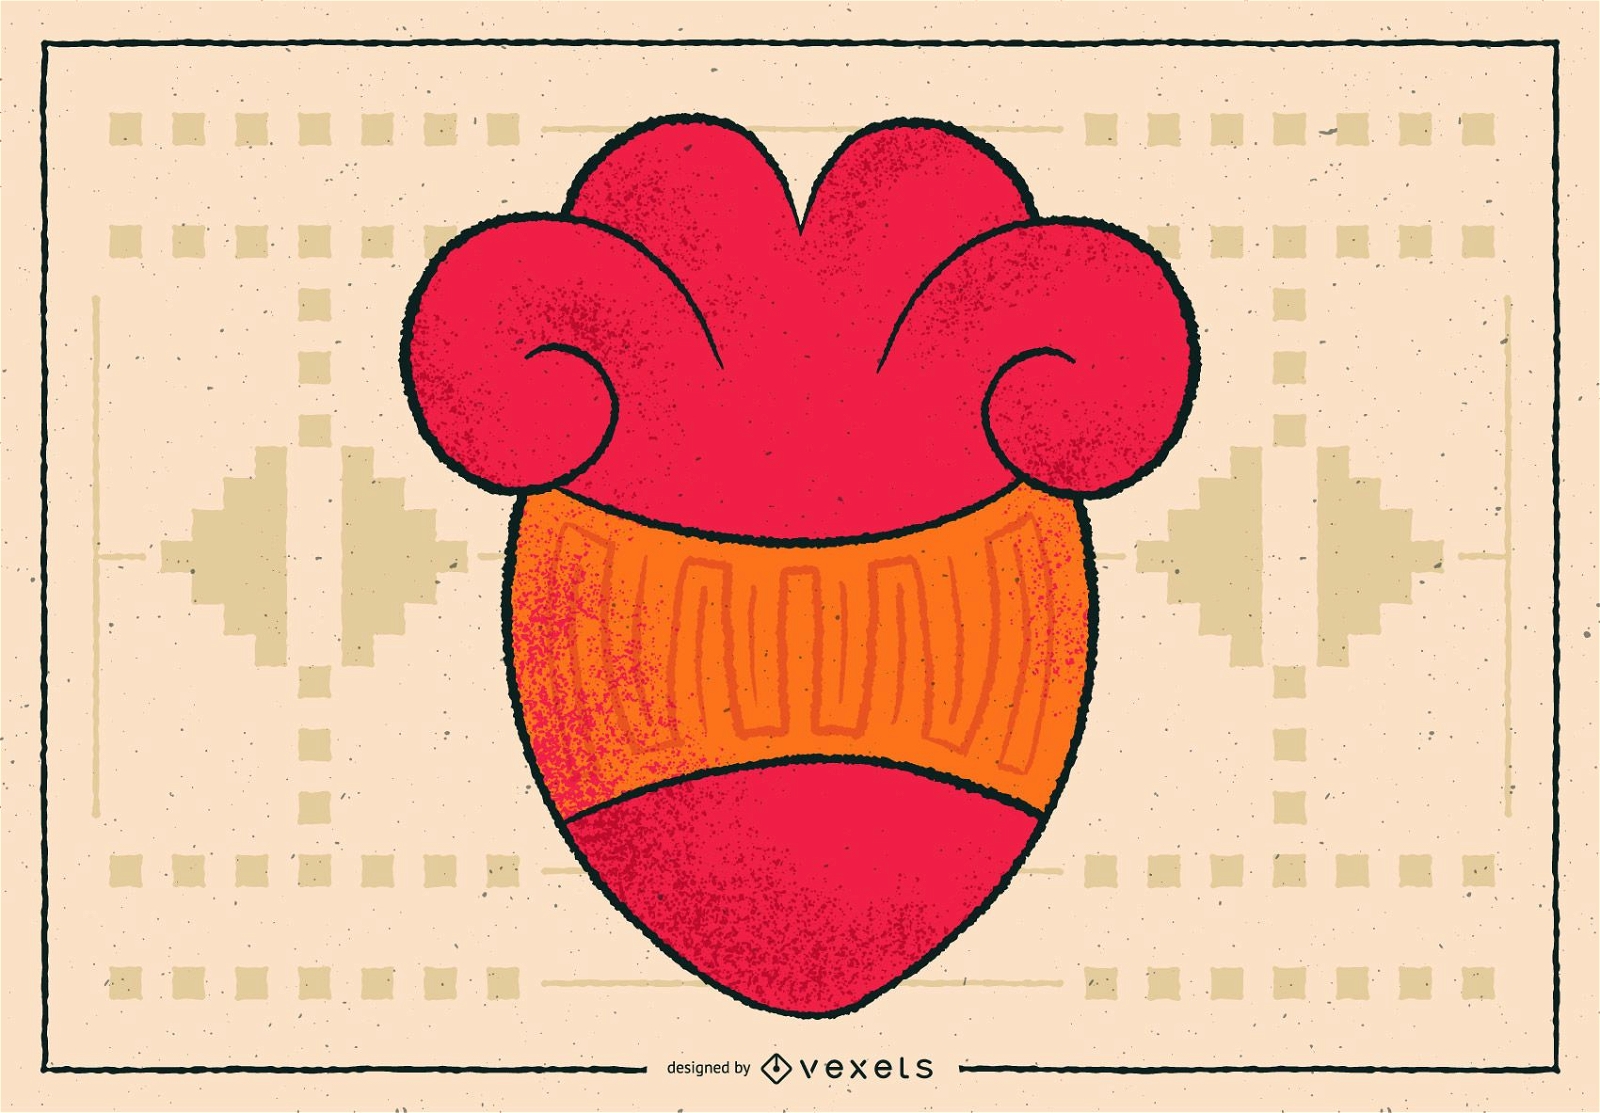 Aztekisches Herz-Illustrations-Design